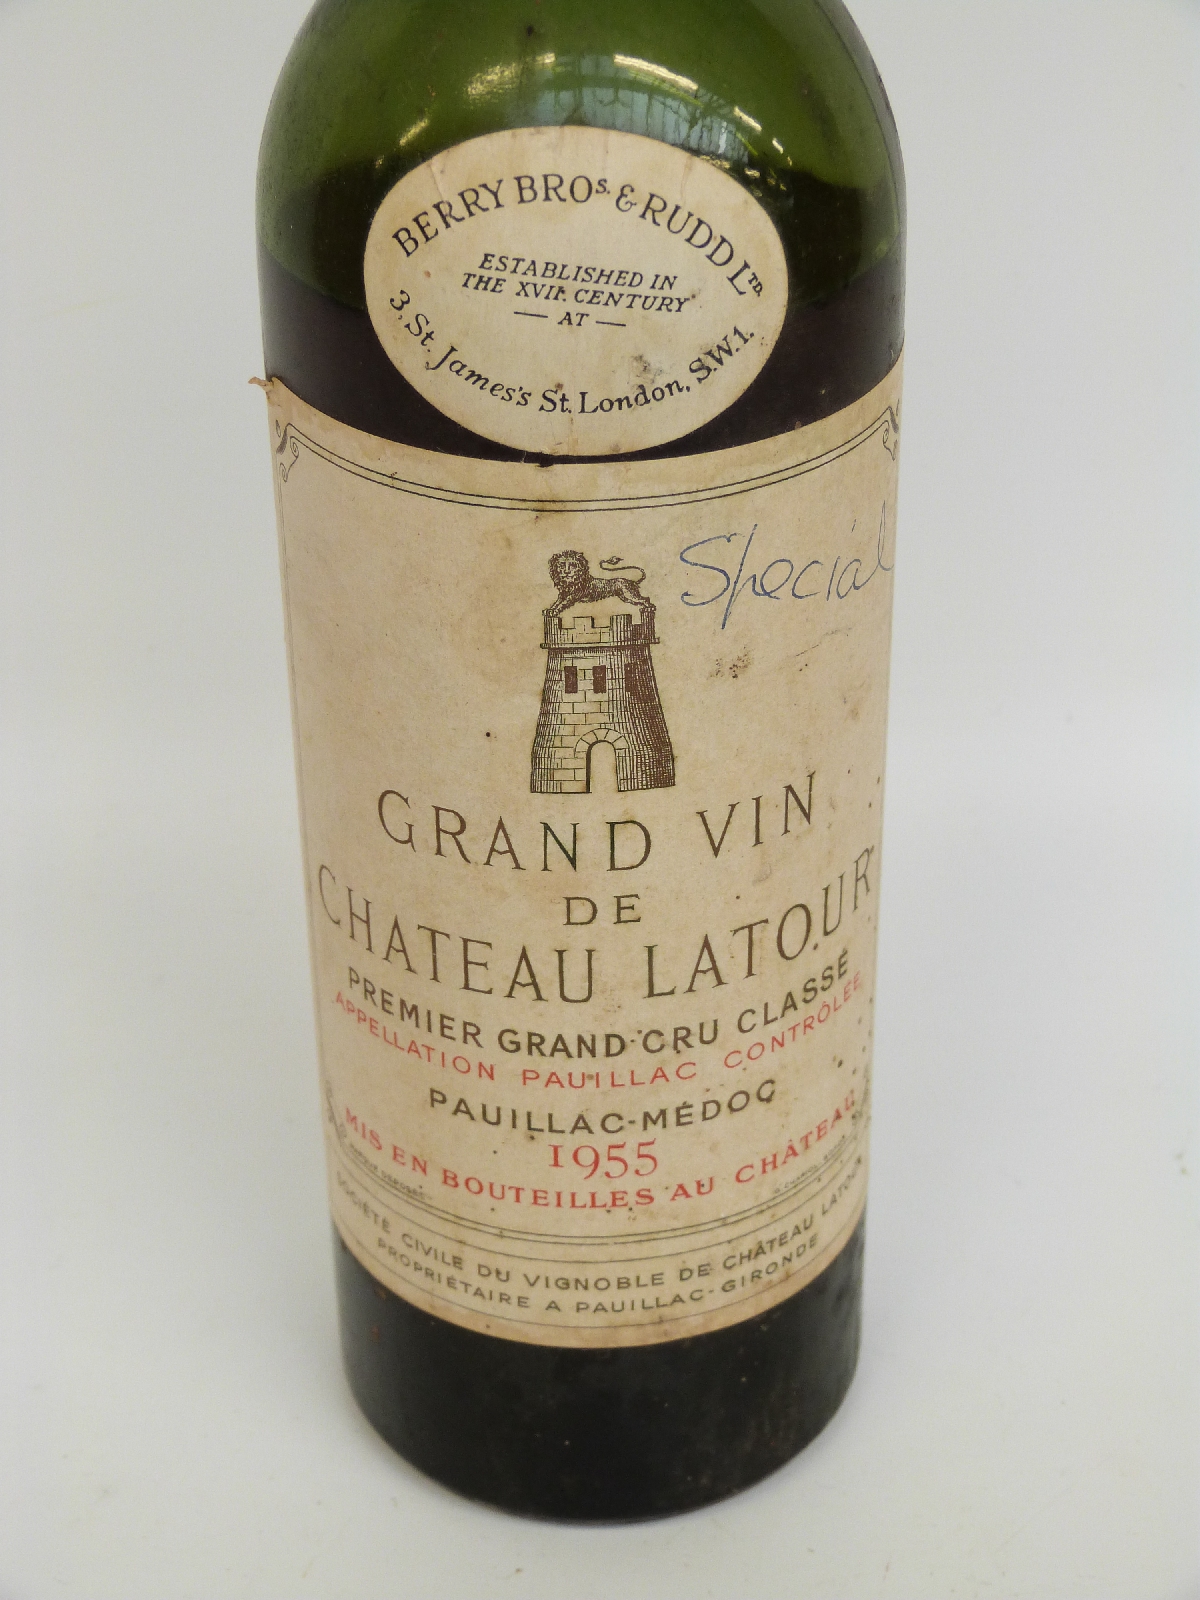 Grand Vin de Chateau Latour 1955 75cl - Image 3 of 3